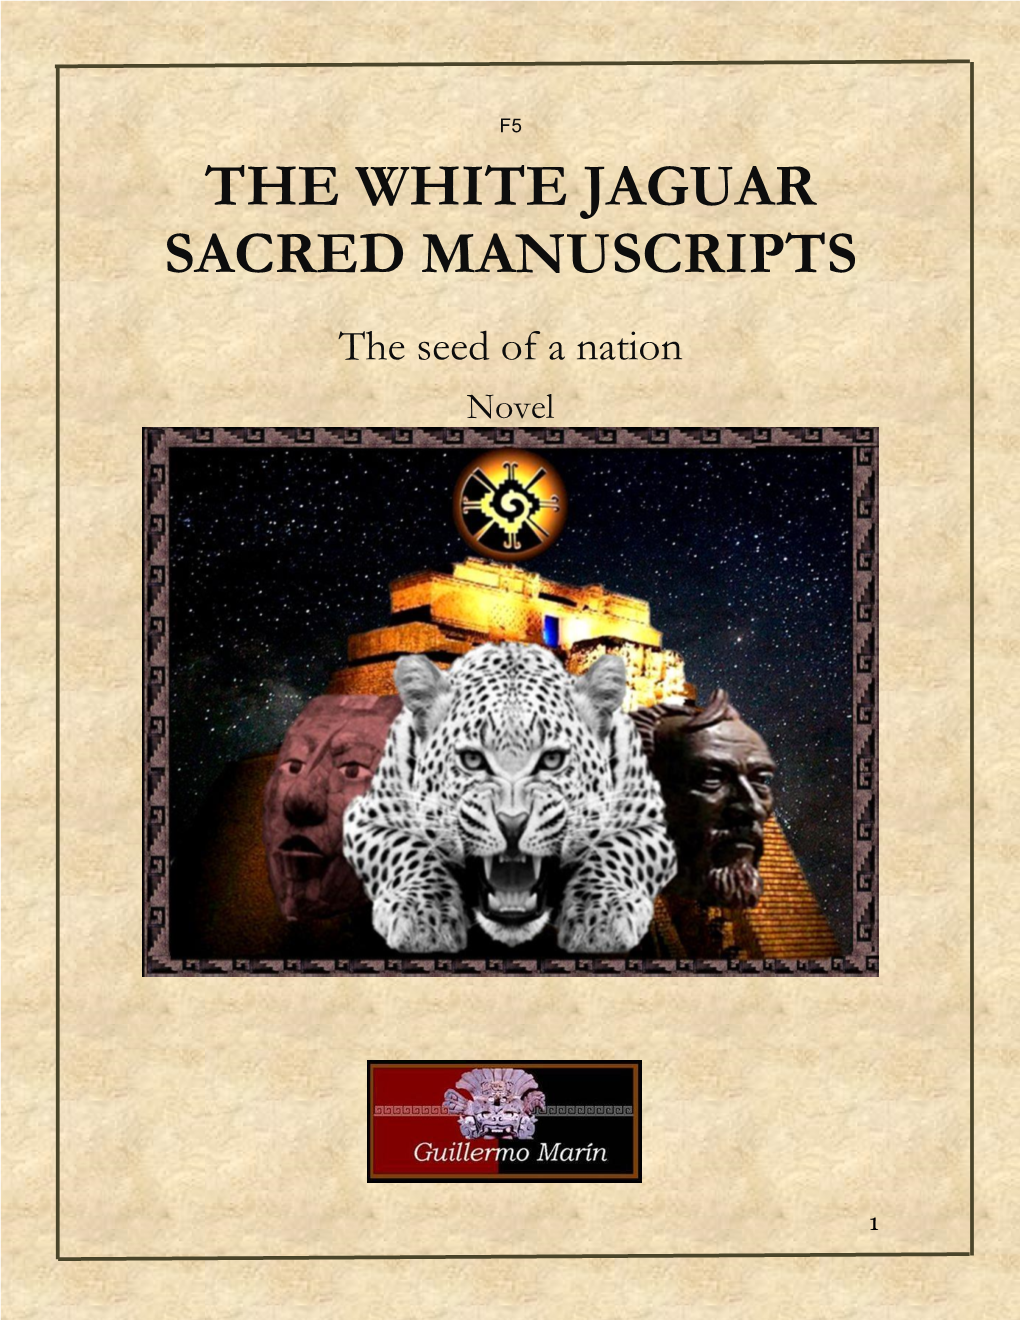 The White Jaguar Sacred Manuscripts